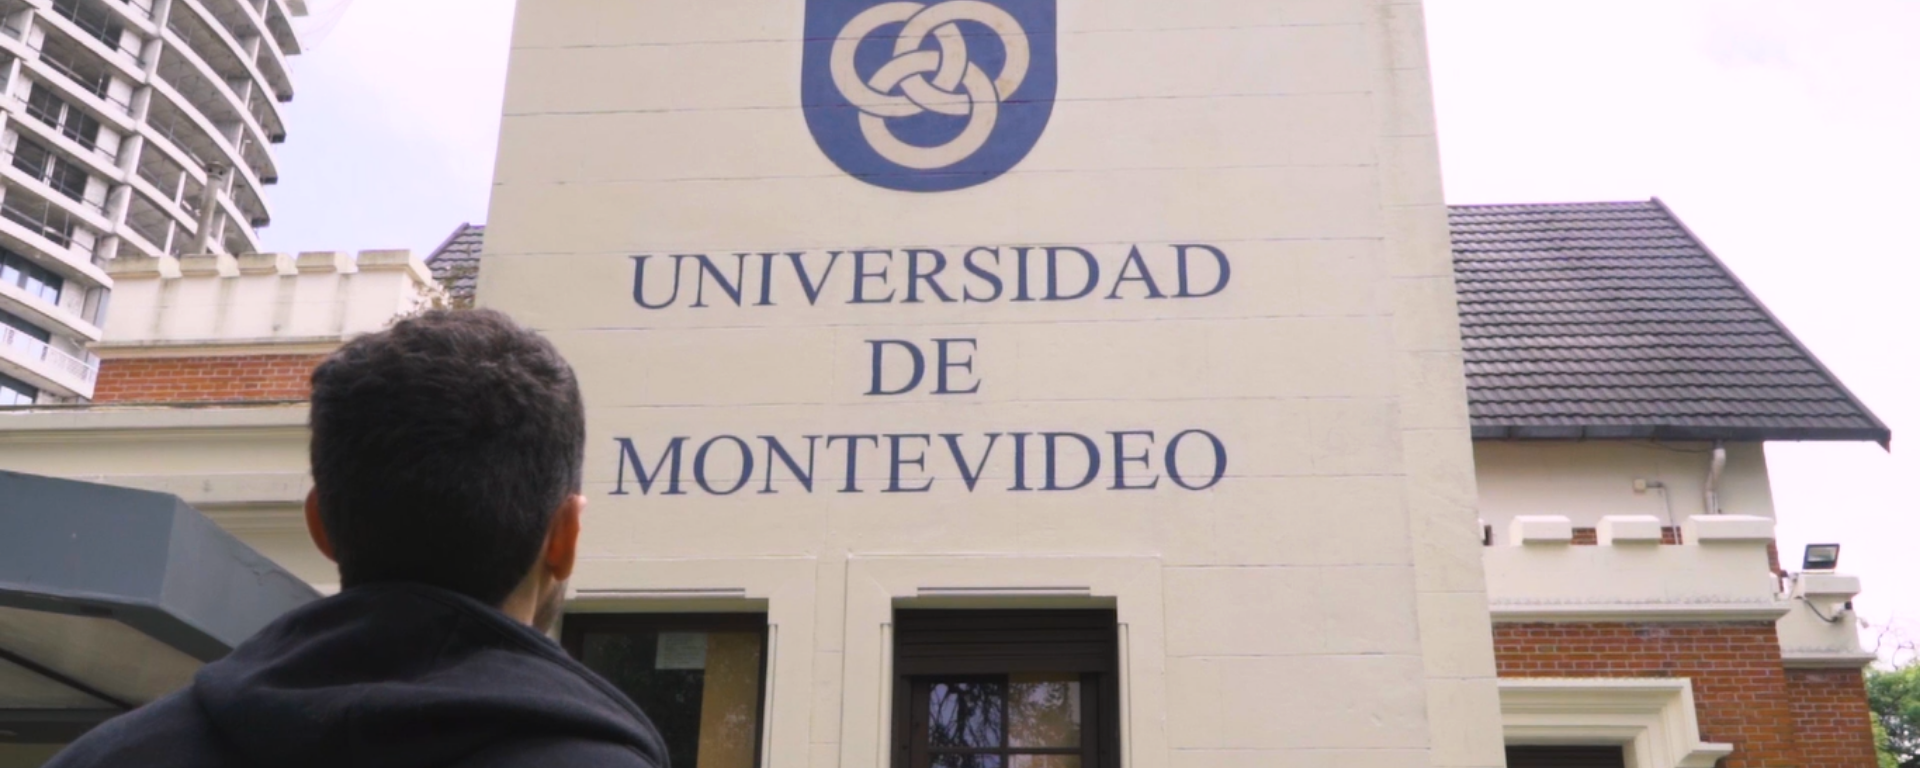 Portada de video institucional, fachada de la Facultad de Ingeniería con logo institucional